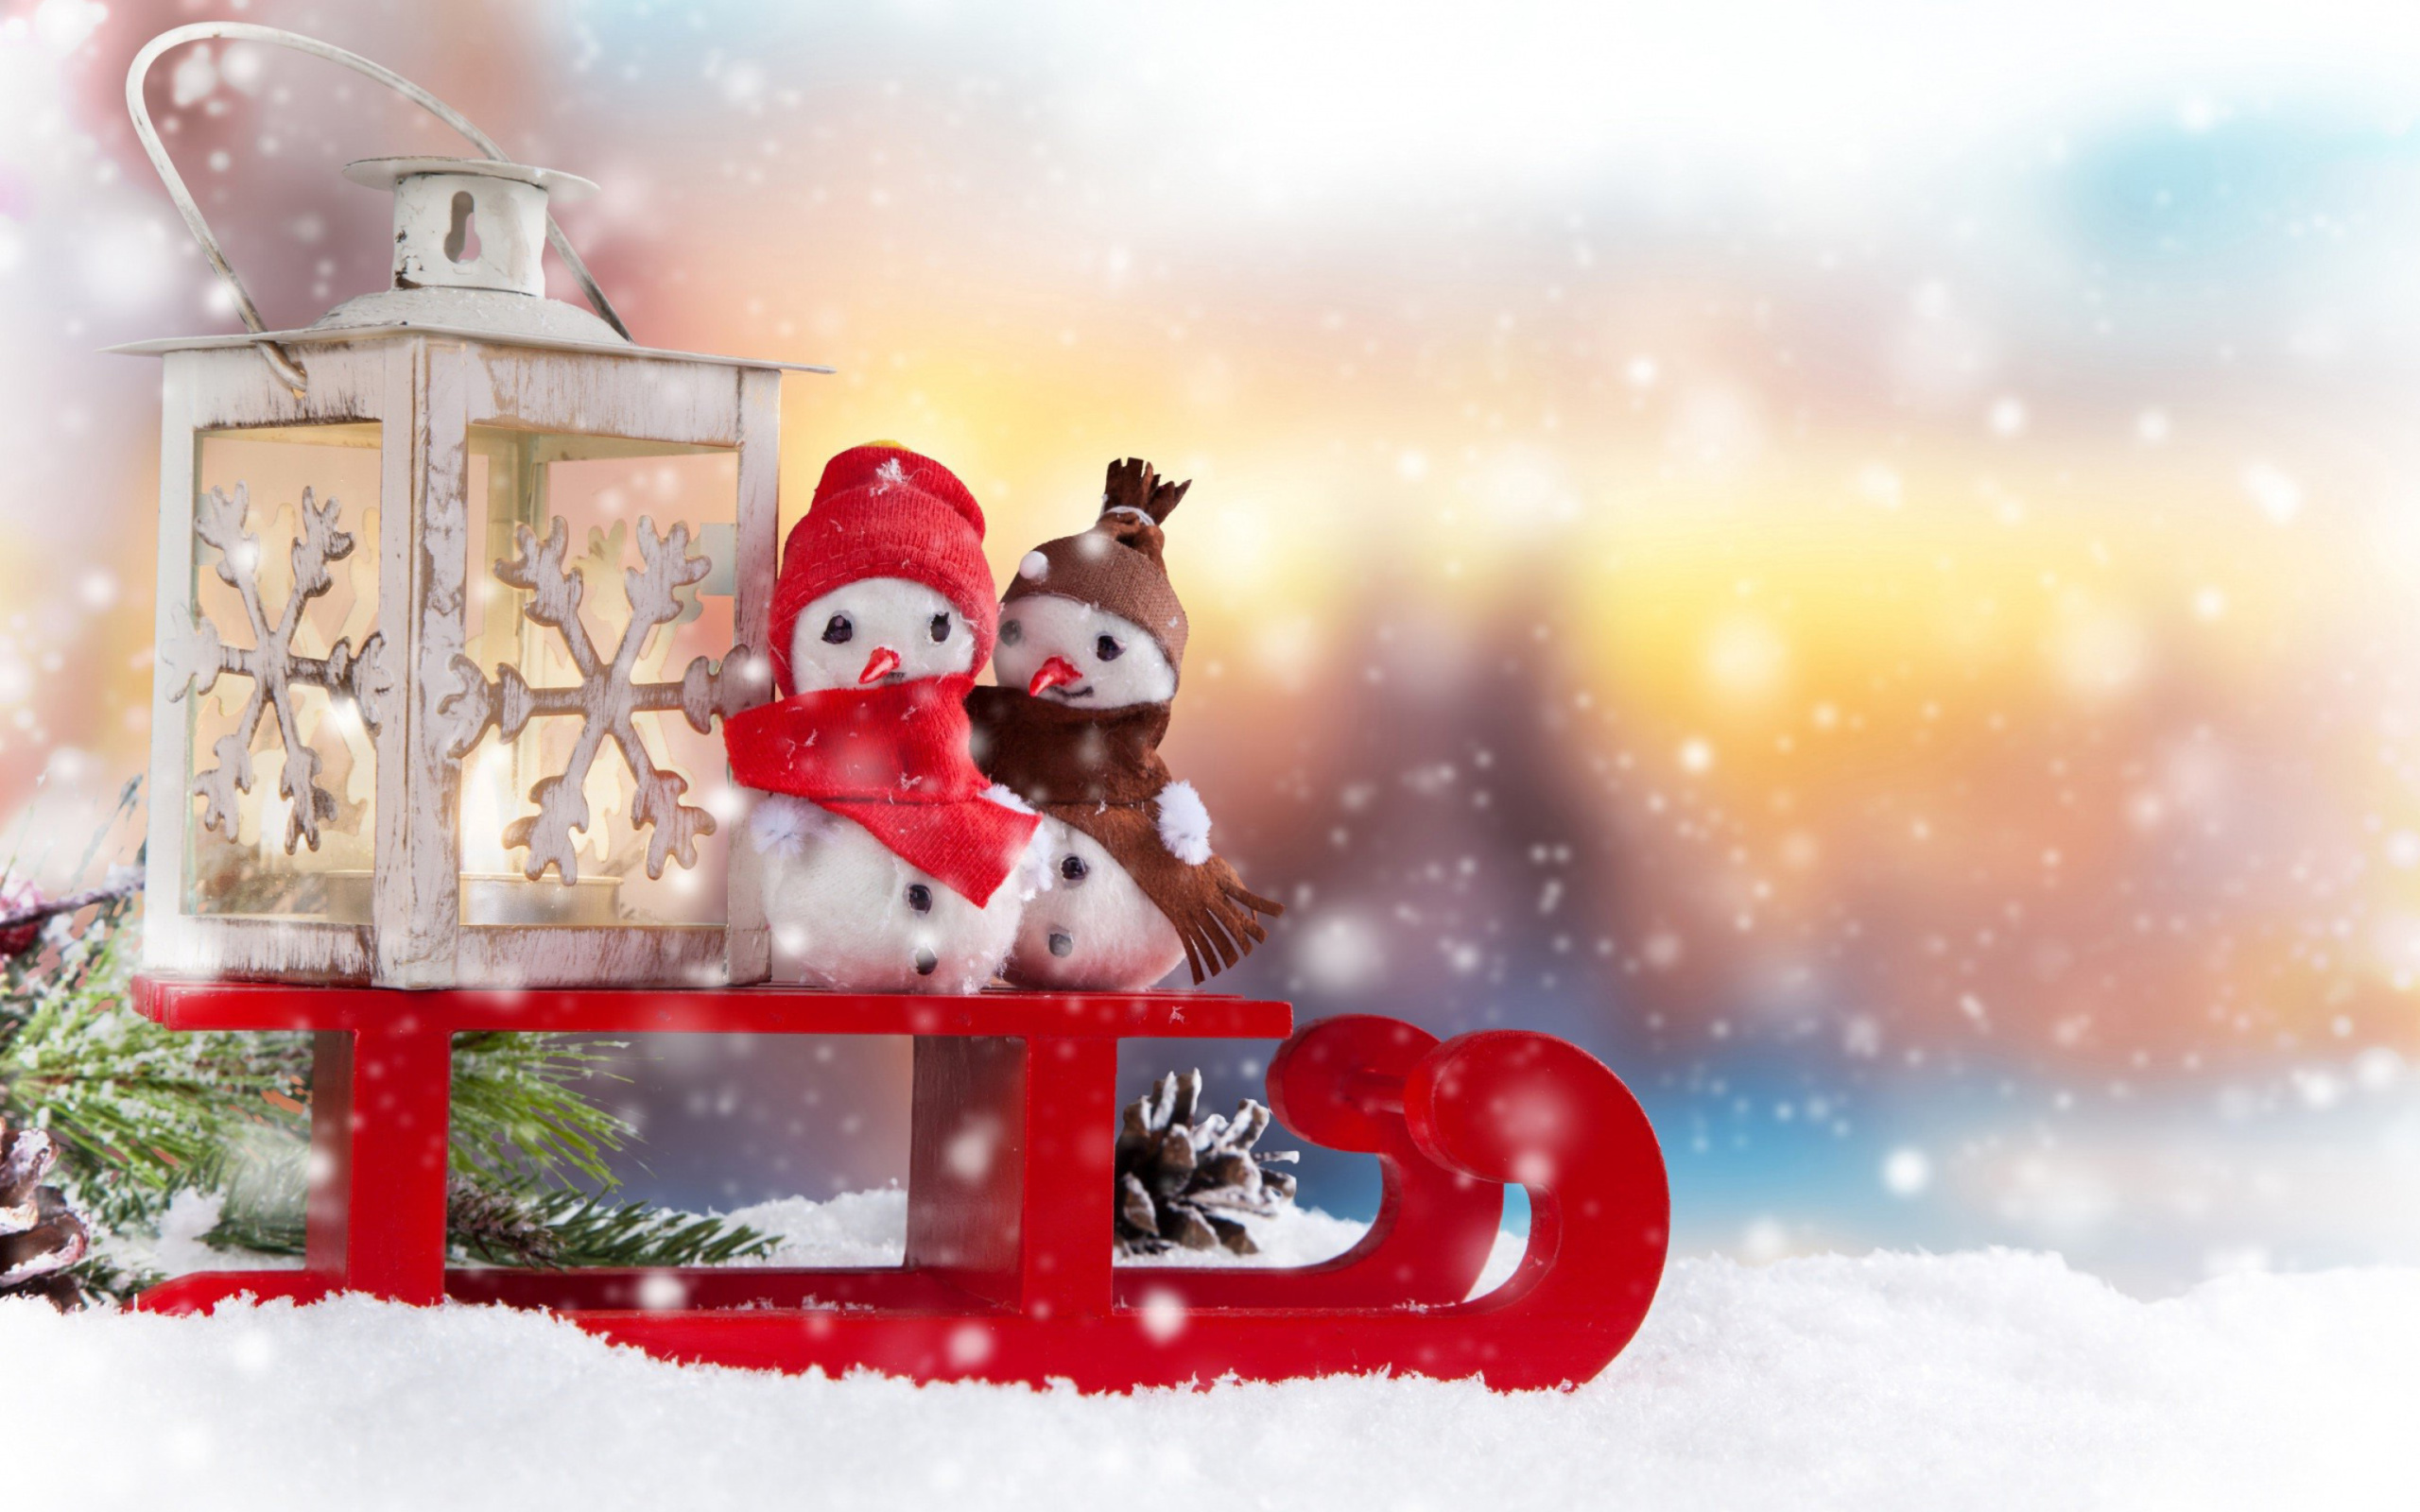 Обои Snowman Christmas Figurines Decoration 2560x1600